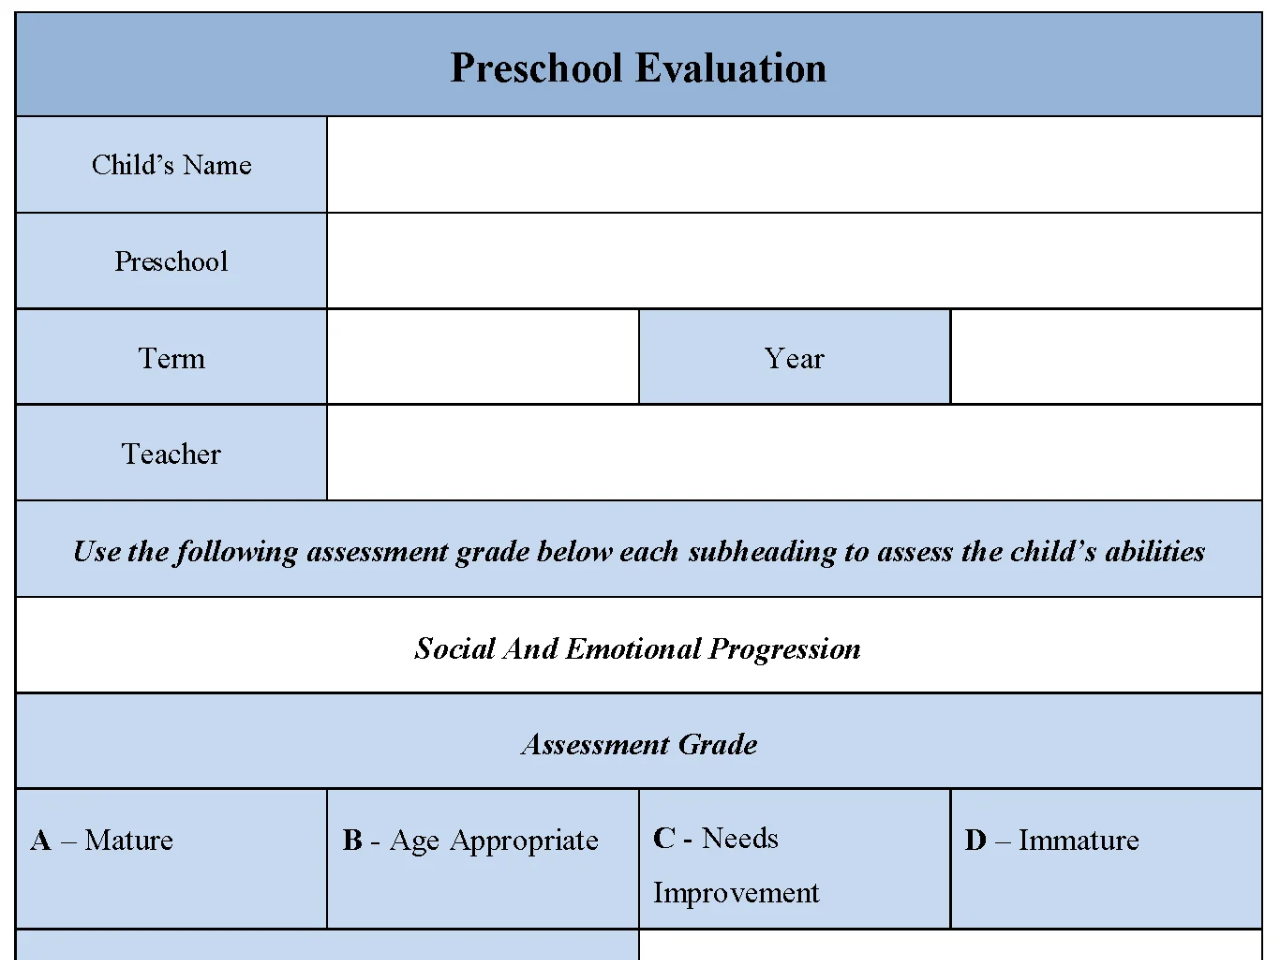 Preschool Evaluation Form